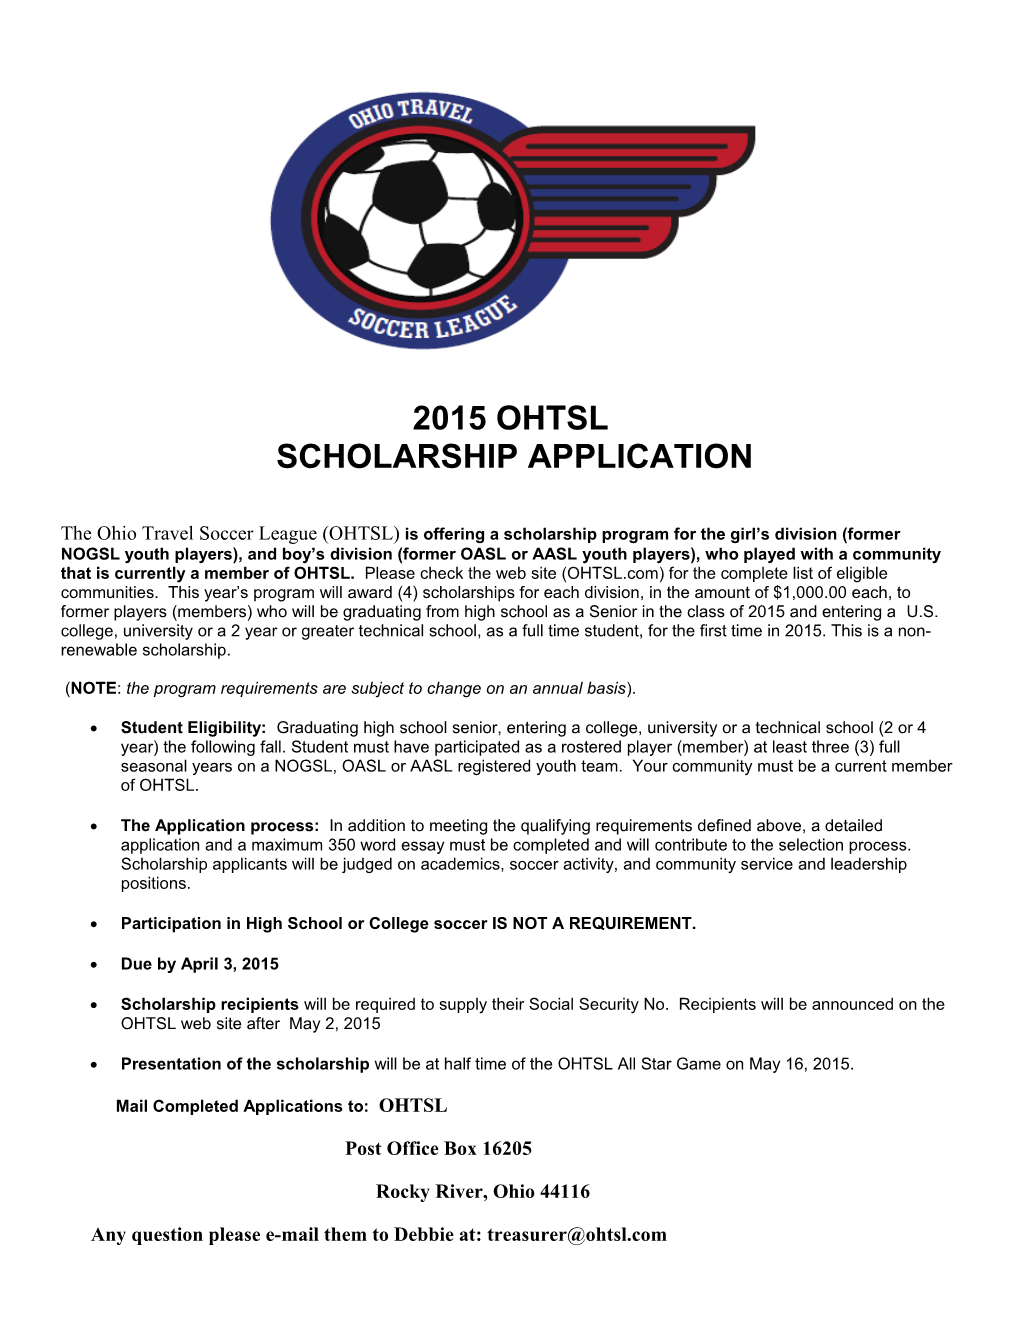 2010 Nogsl Scholarship Application